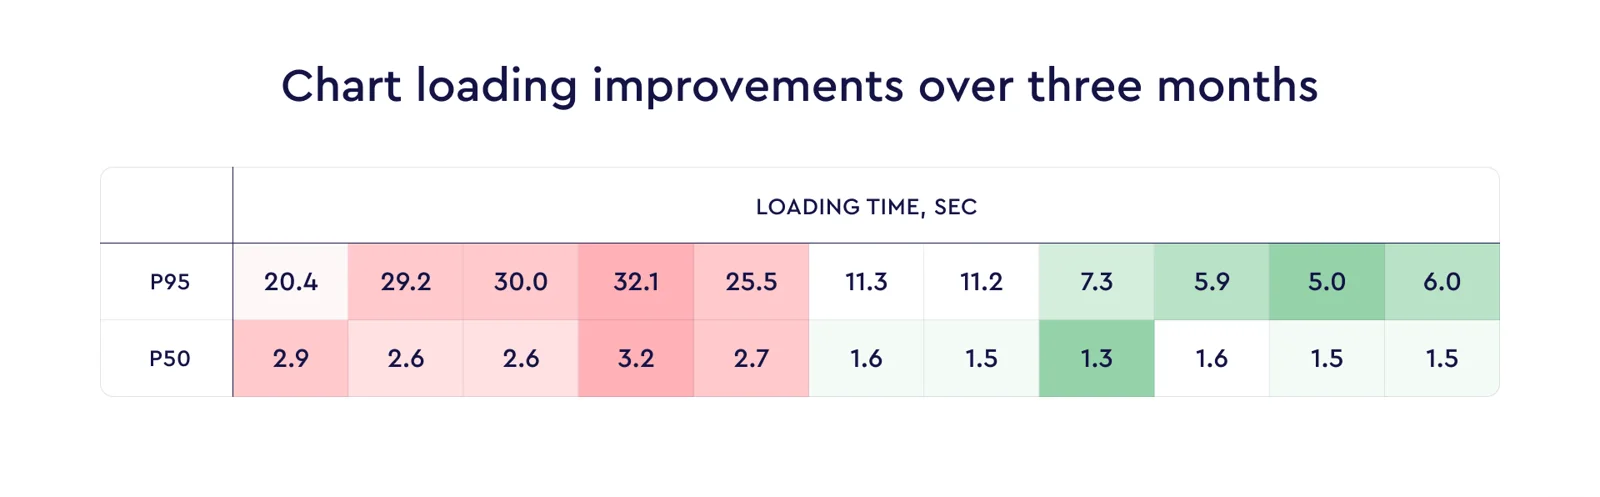 Figure 1: Chart loading improvements